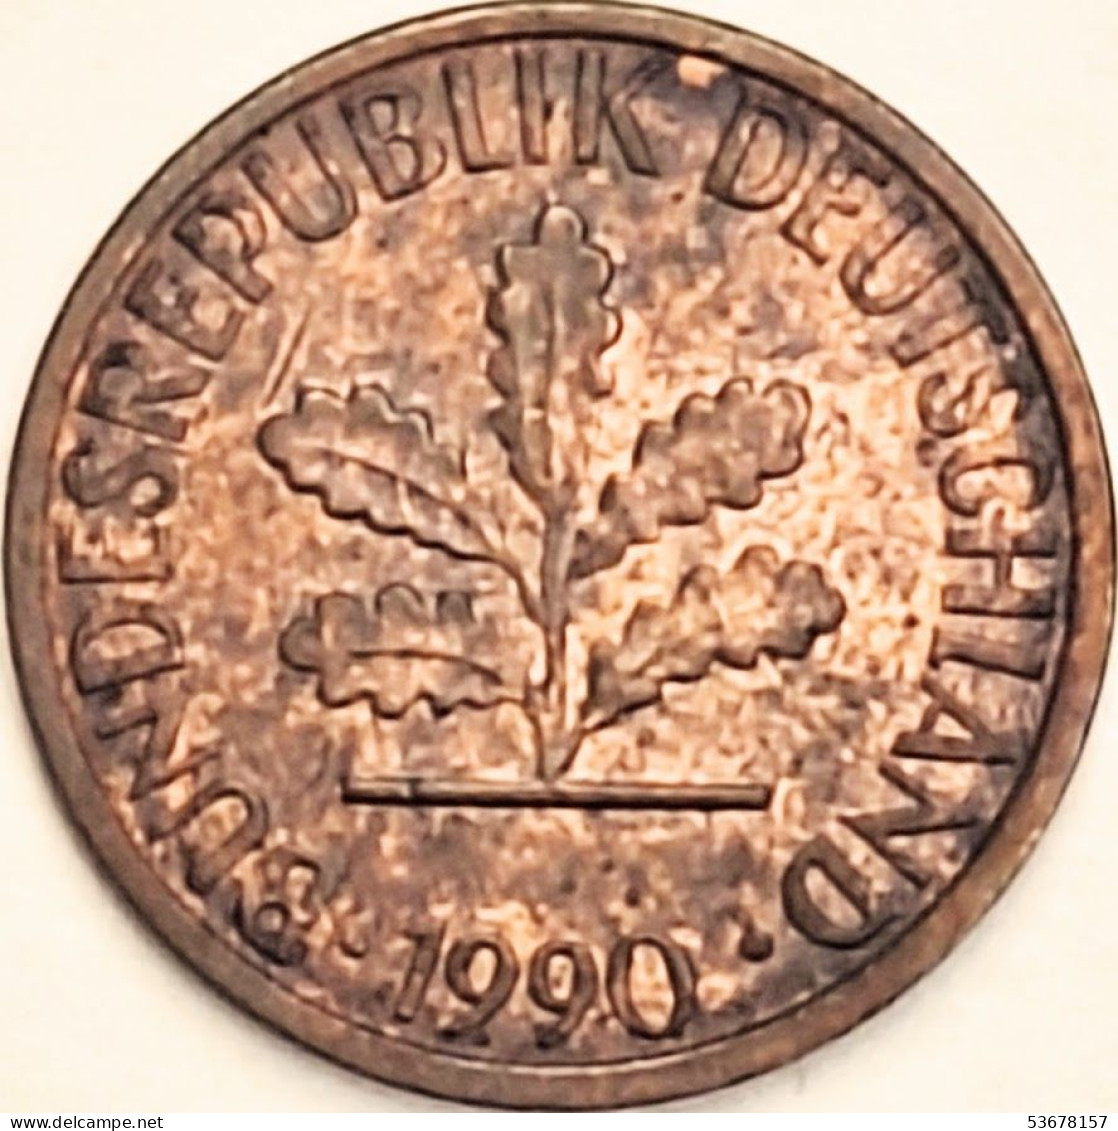 Germany Federal Republic - Pfennig 1990 F, KM# 105 (#4506) - 1 Pfennig